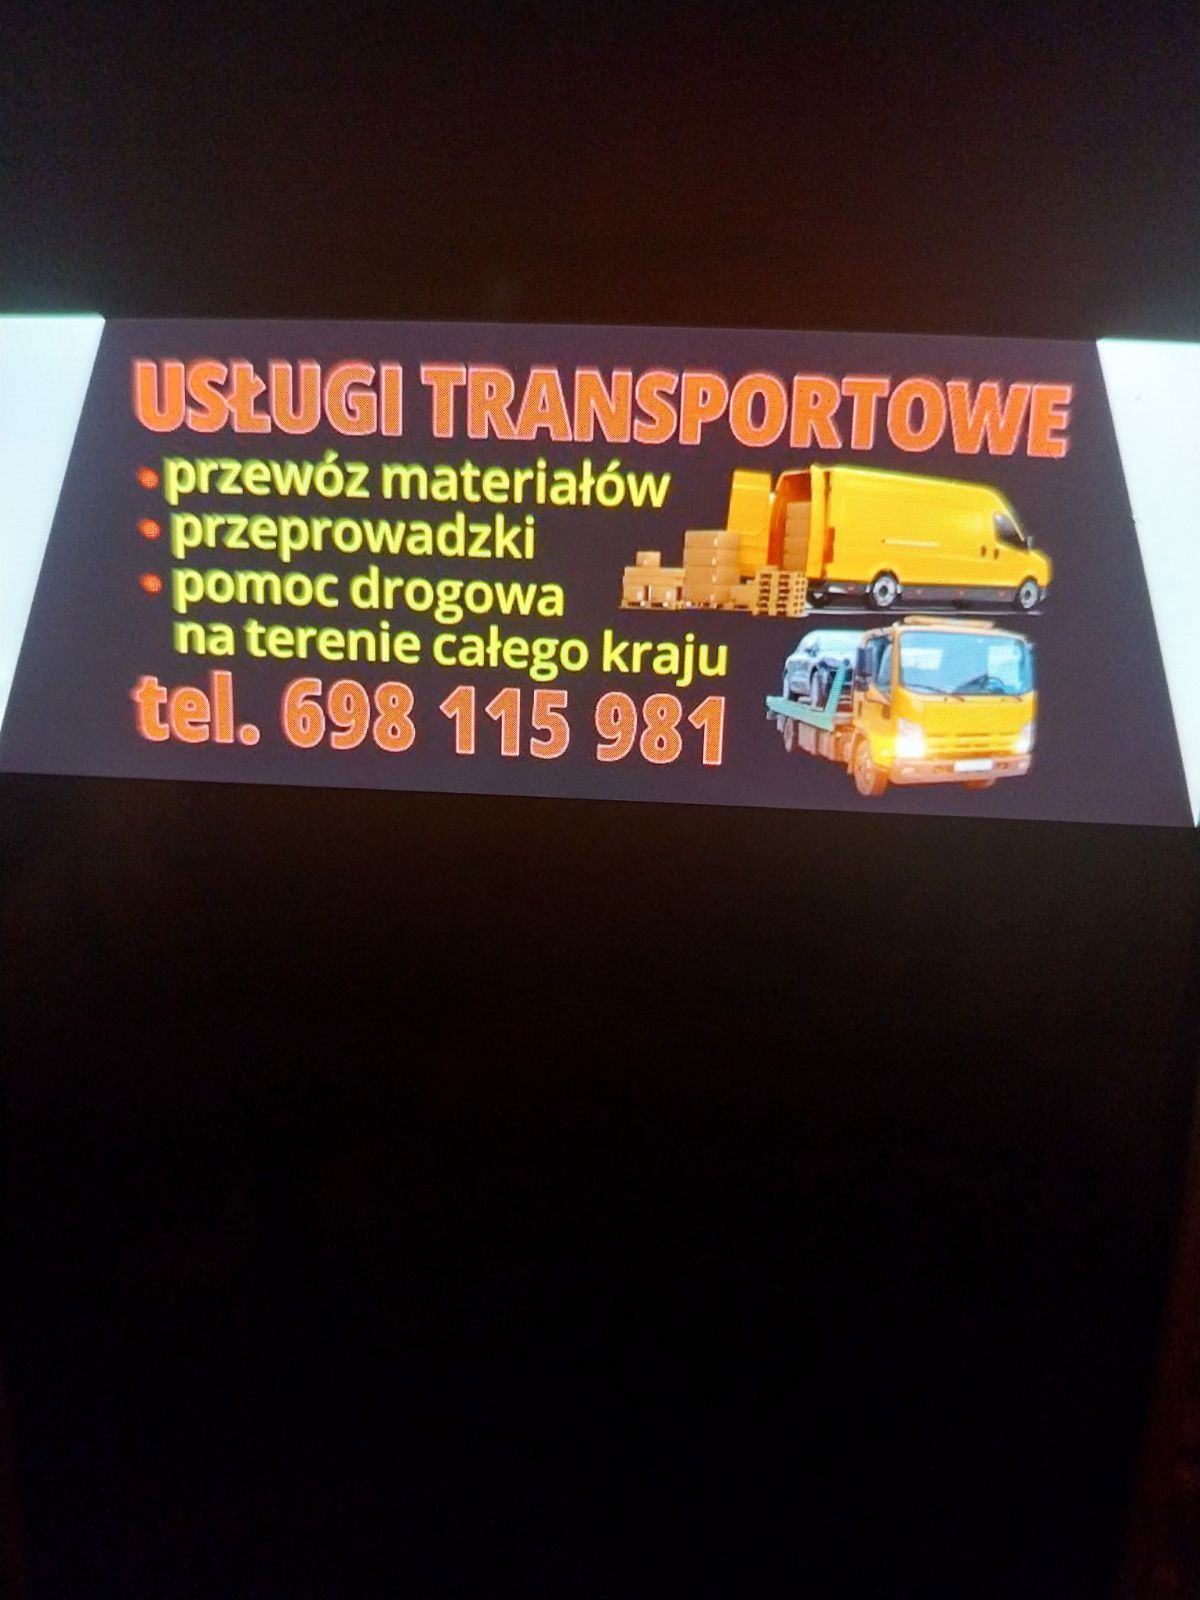 Usługi transportowe przeprowadzki Pabianice Rzgów Łódź